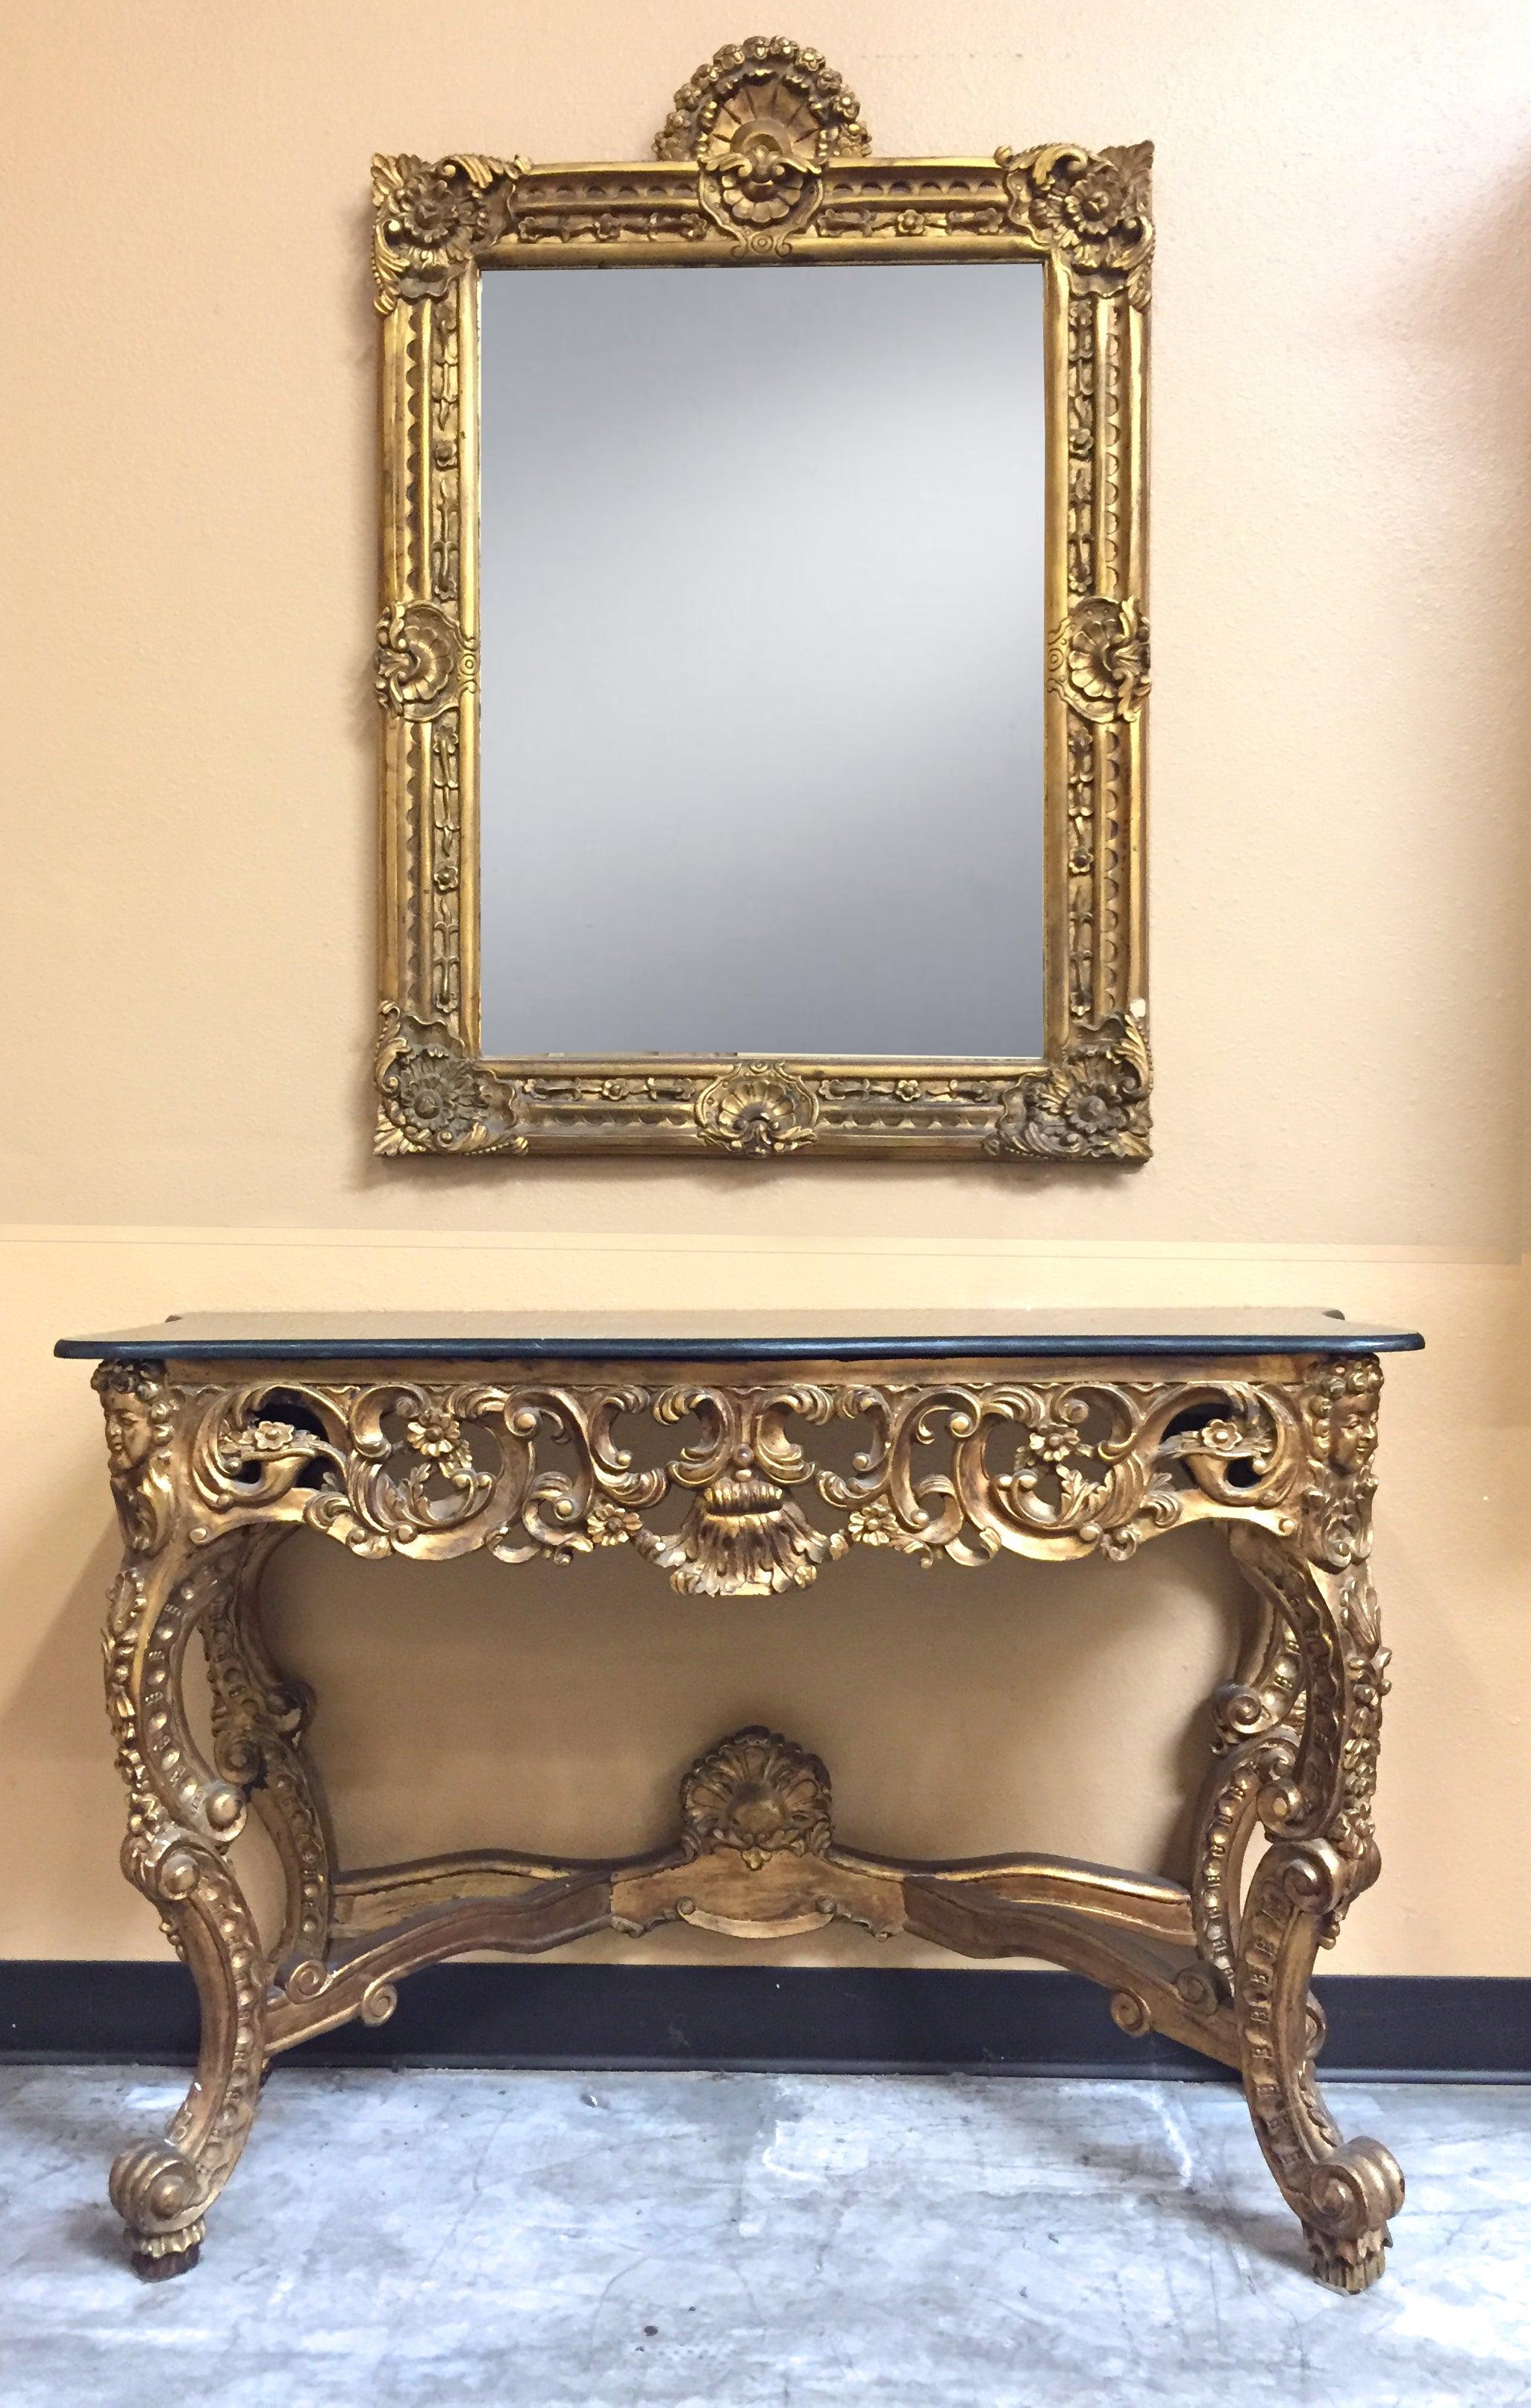 Console et miroir italien en bois doré magnifiquement sculpté avec dessus en marbre noir.
Début du 20e siècle. 

Le miroir est surmonté d'une coquille dorée, au-dessus d'une plaque de miroir rectangulaire entourée d'un cadre sculpté dans un motif